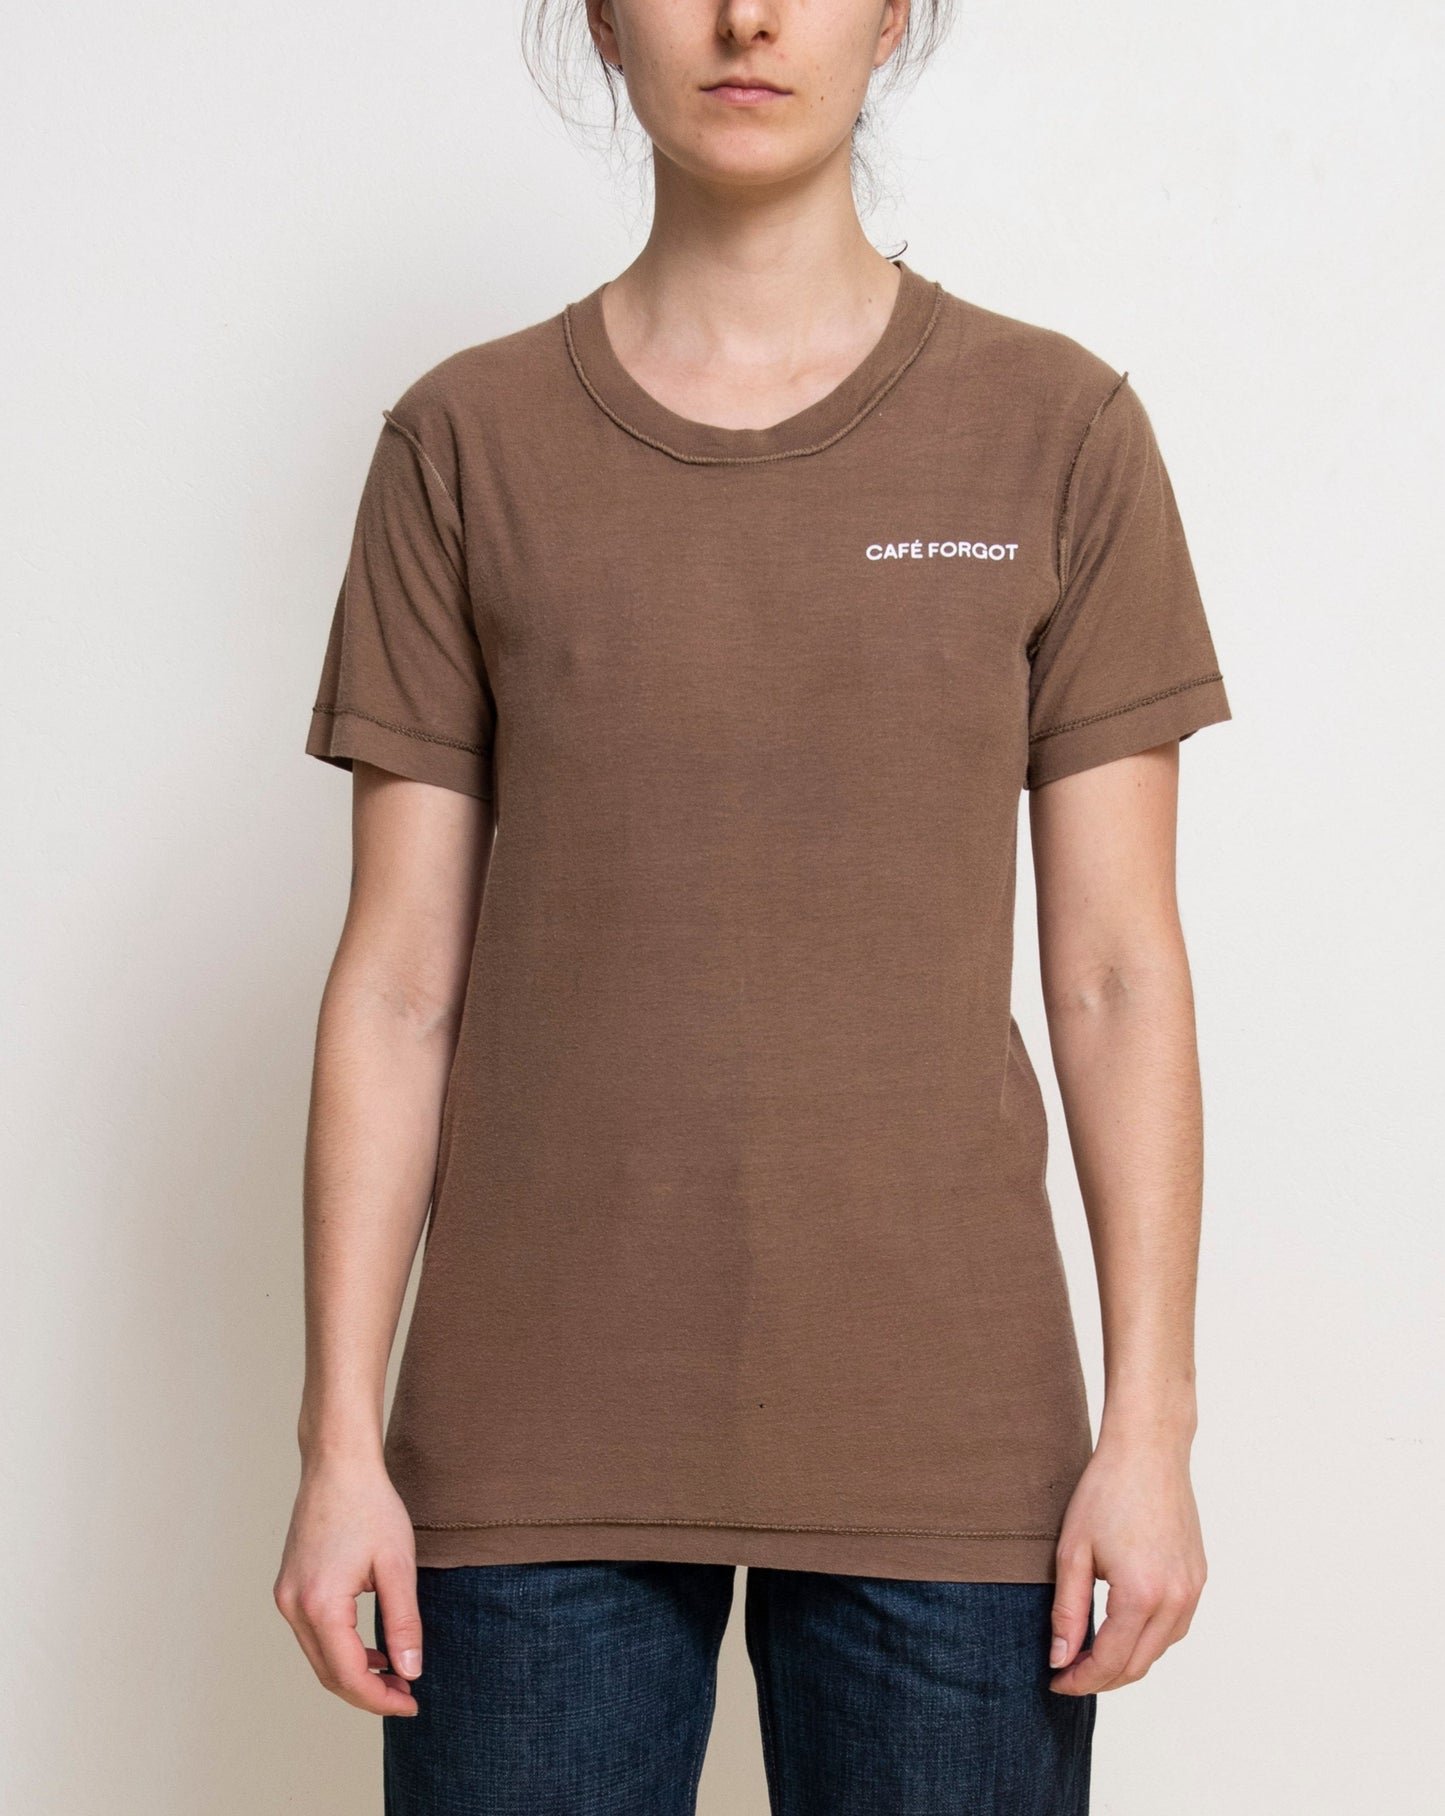 Café Forgot - CF T-shirt Brown